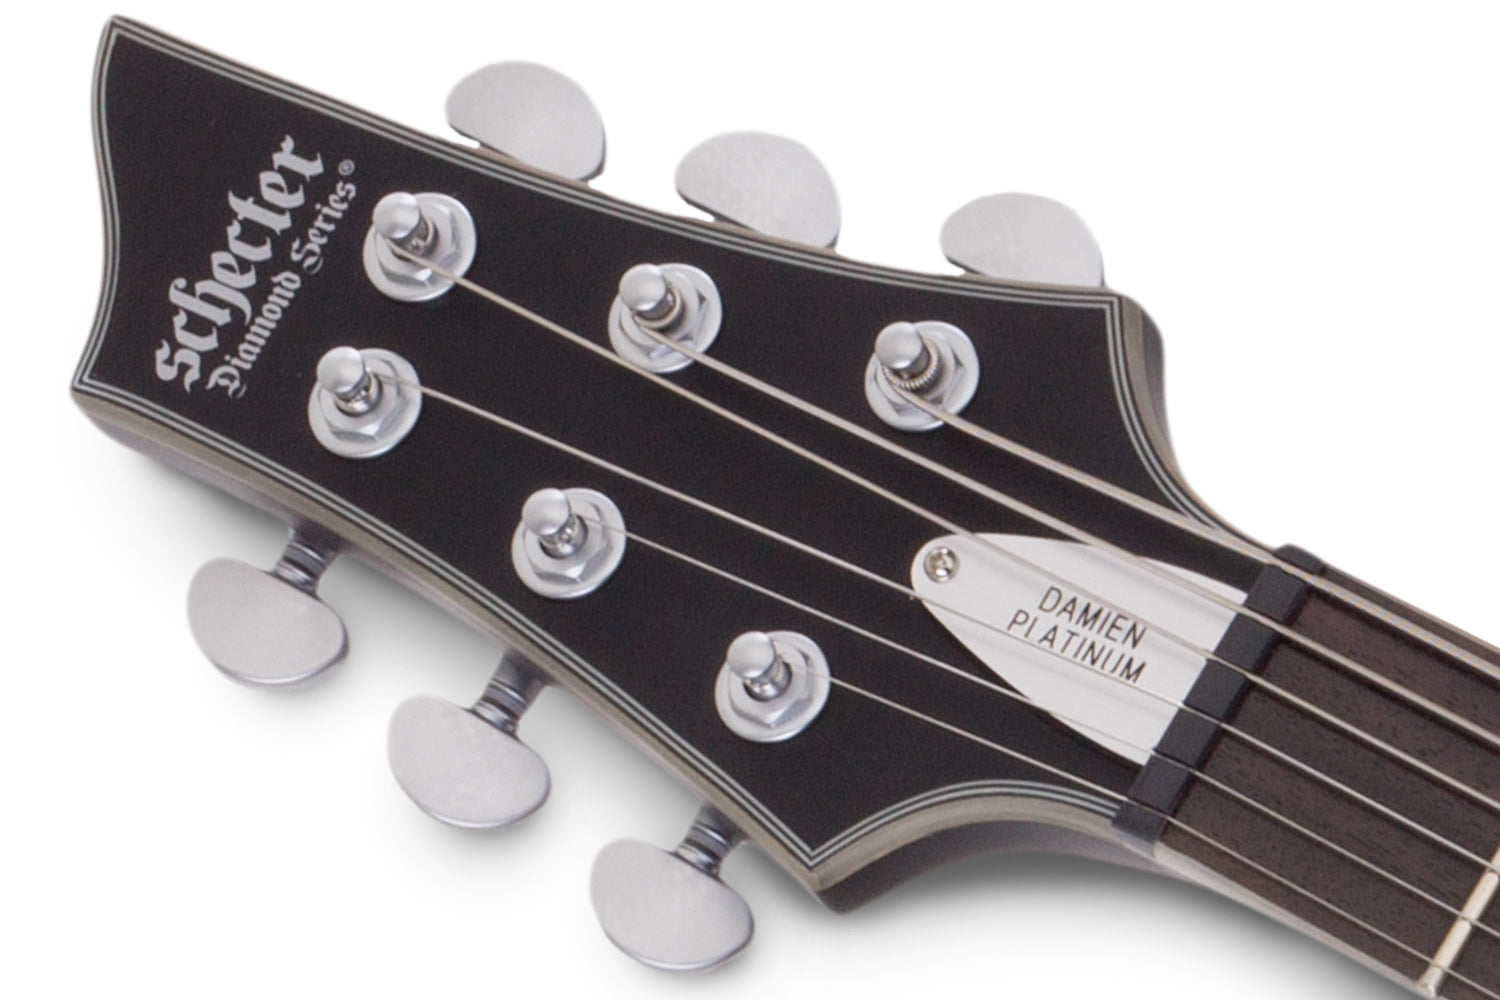 Schecter LEFT HANDED DAMIEN PLATINUM DAMIEN-PLAT-6-LH-SBK Satin Black Guitar with EMG 81, 85 Pickups 1182-SHC